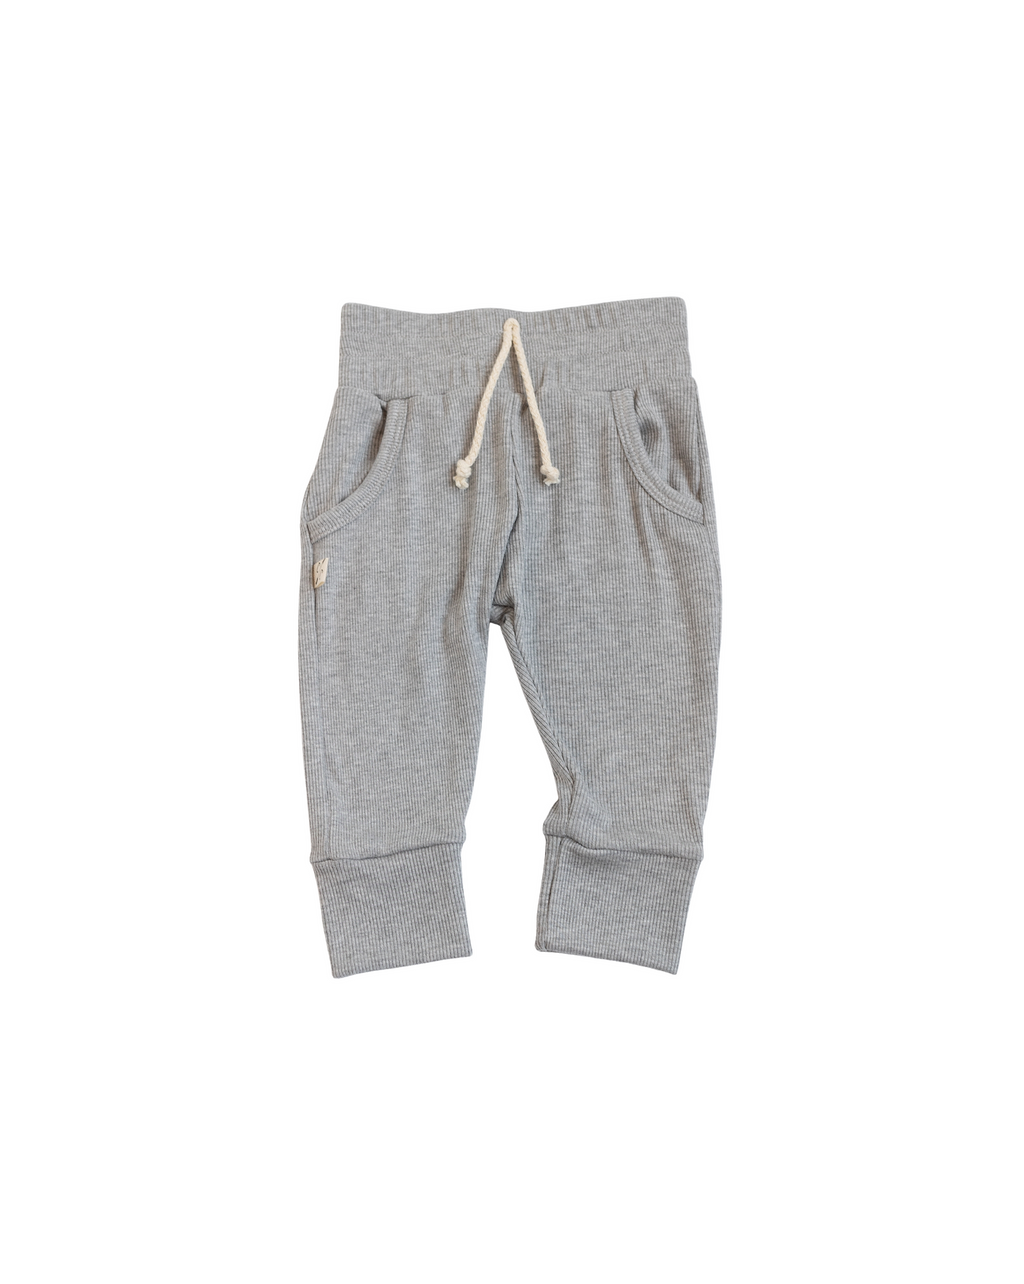 rib knit jogger - gray heather